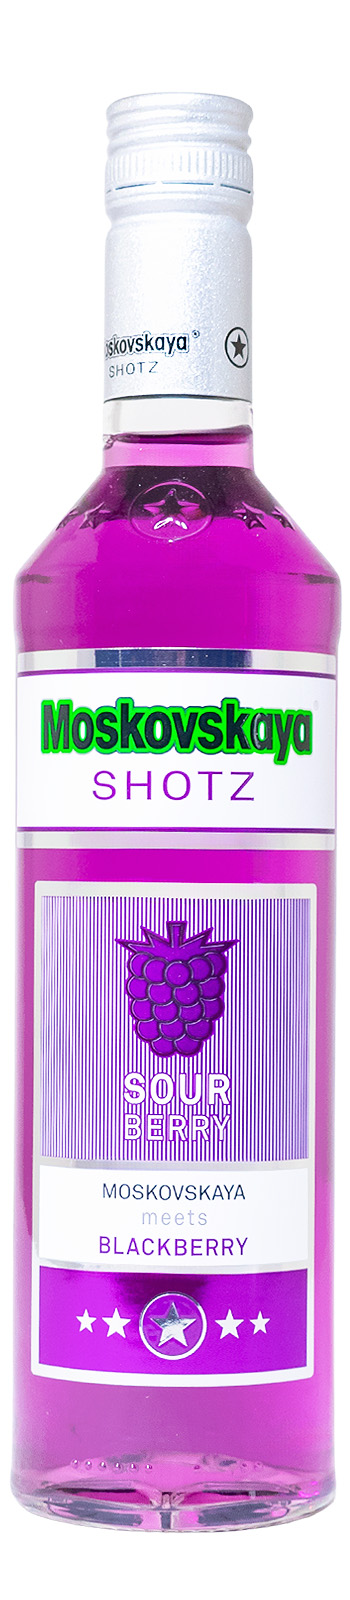 Moskovskaya Shotz Sour Berry - 0,5L 17% vol